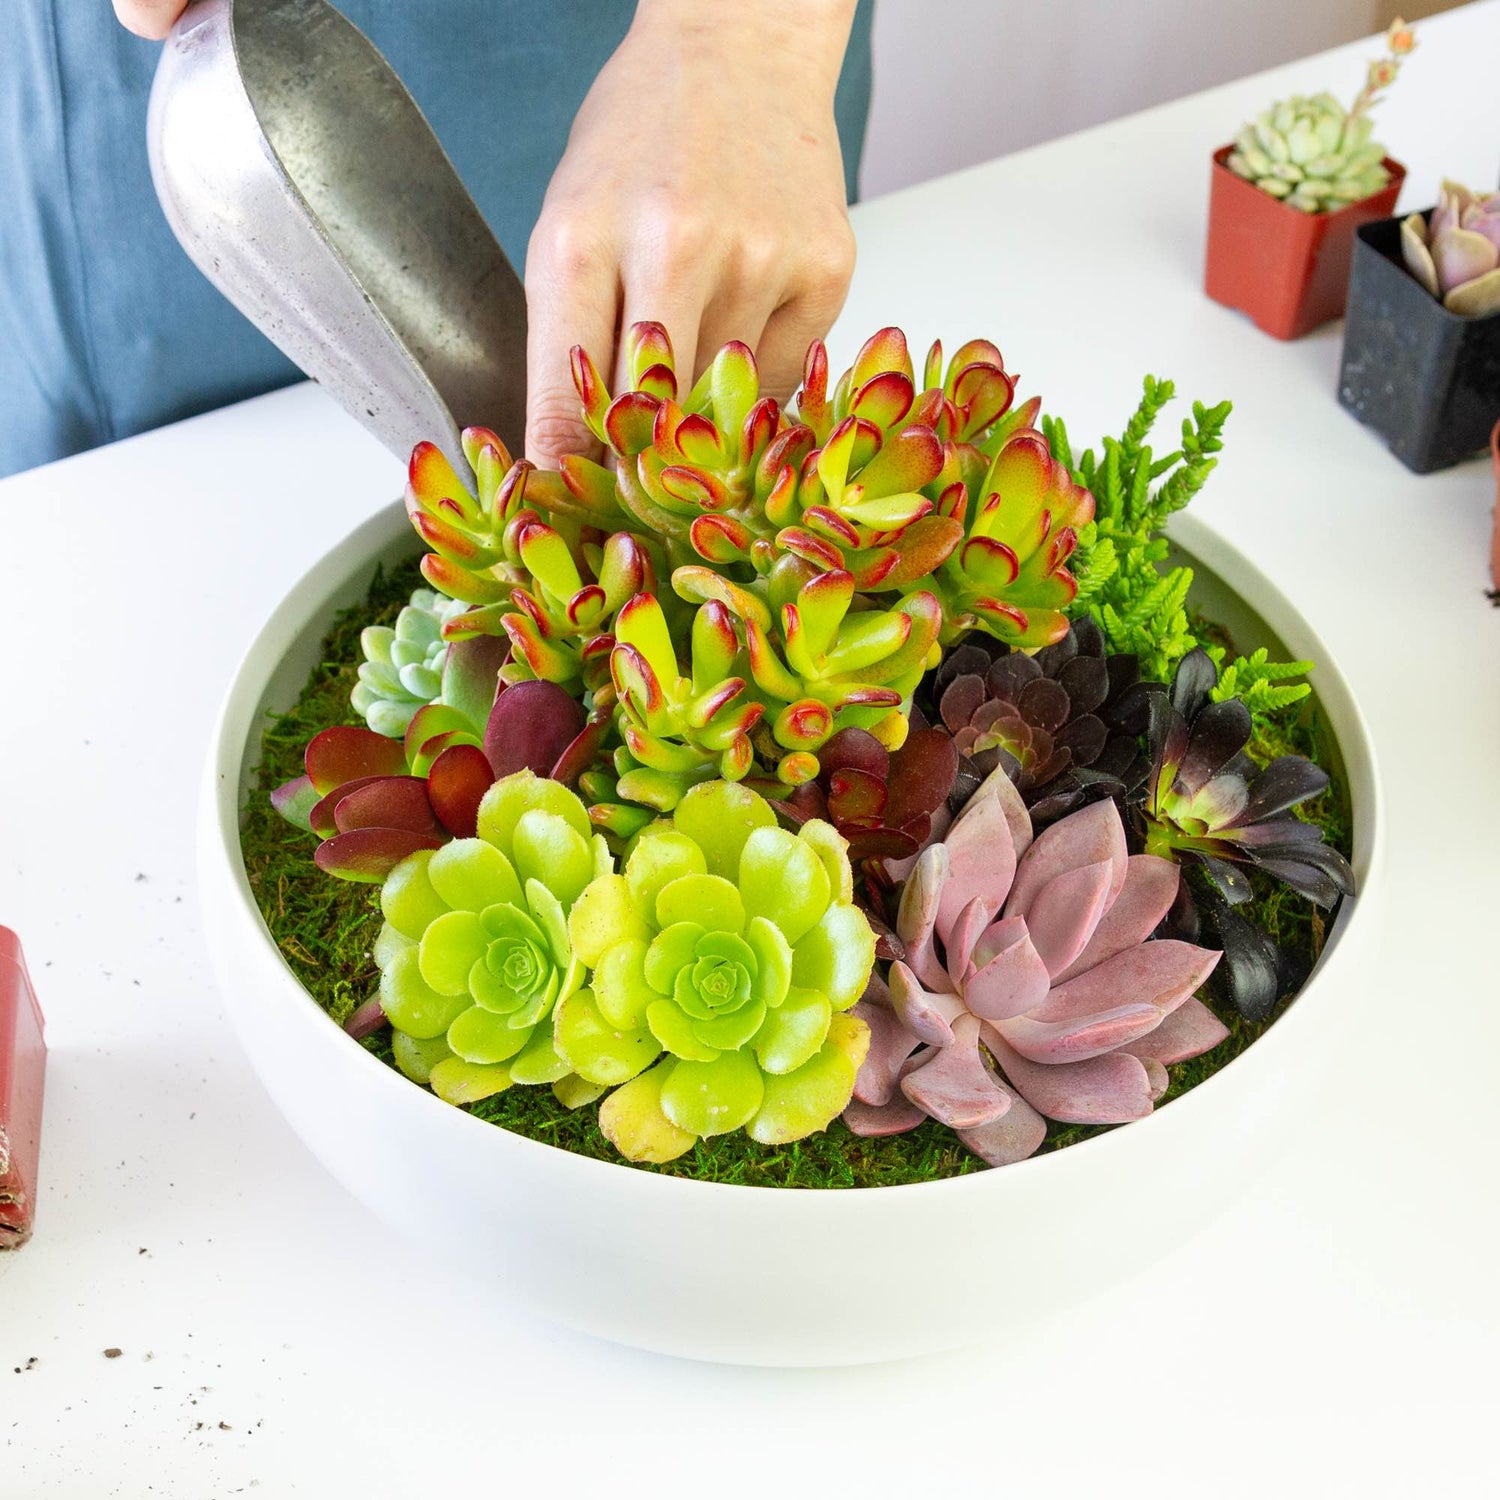 Dewy Flowers plant shop florist arranging live succulents into a white ceramic bowl container